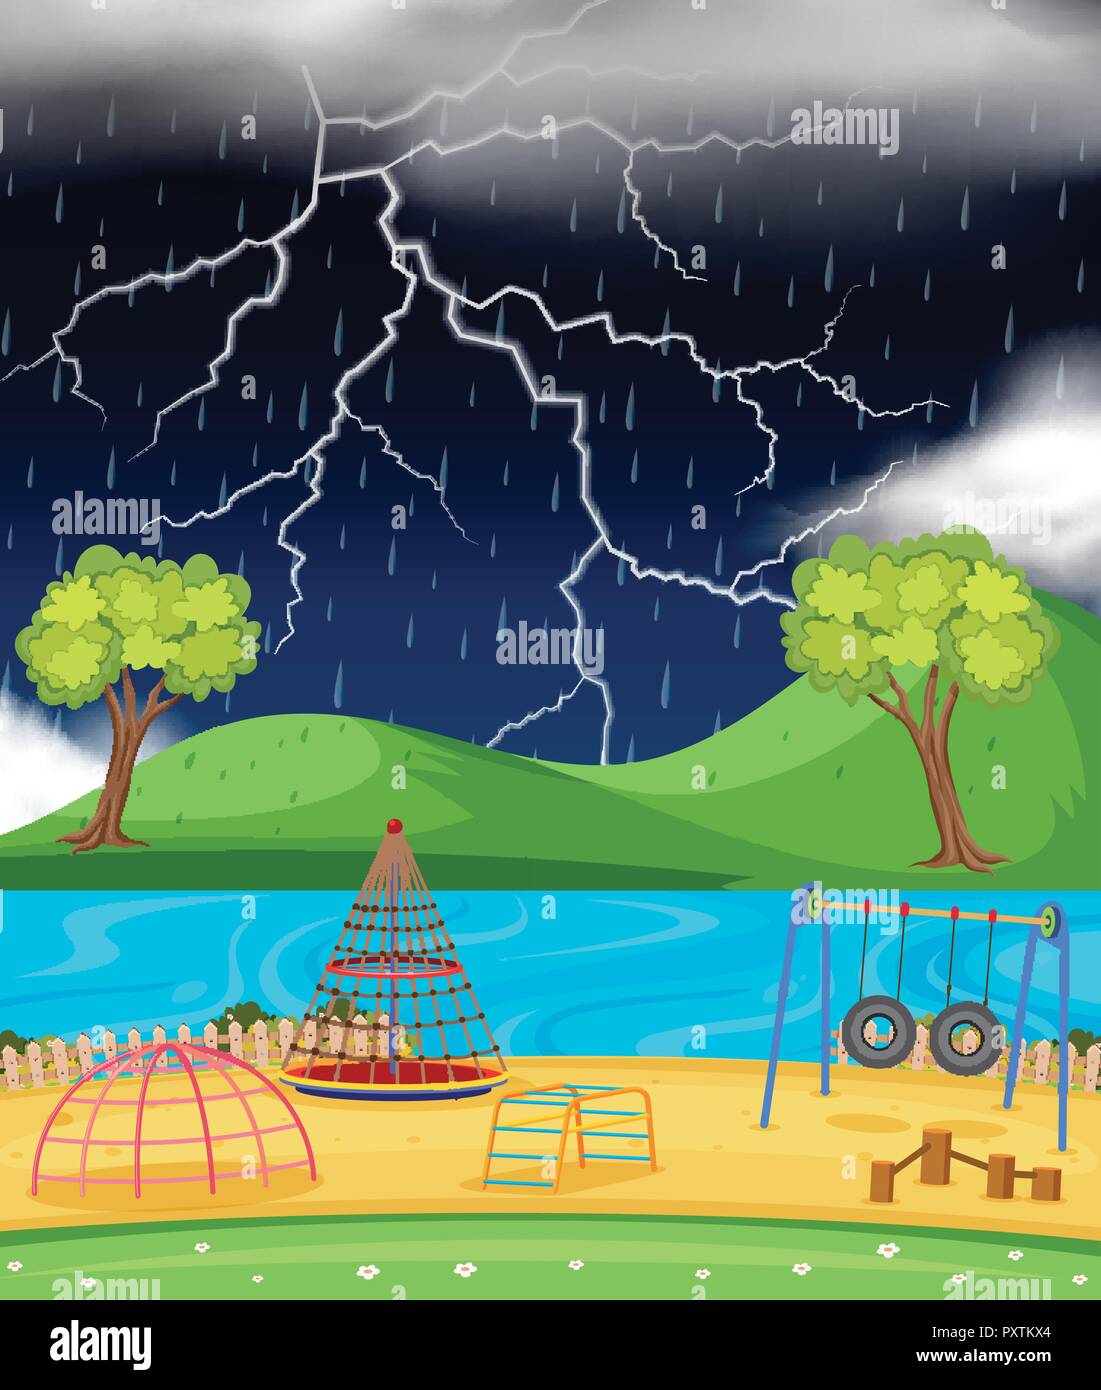 Hintergrund Szene mit Spielplatz im Regen Abbildung Stock Vektor